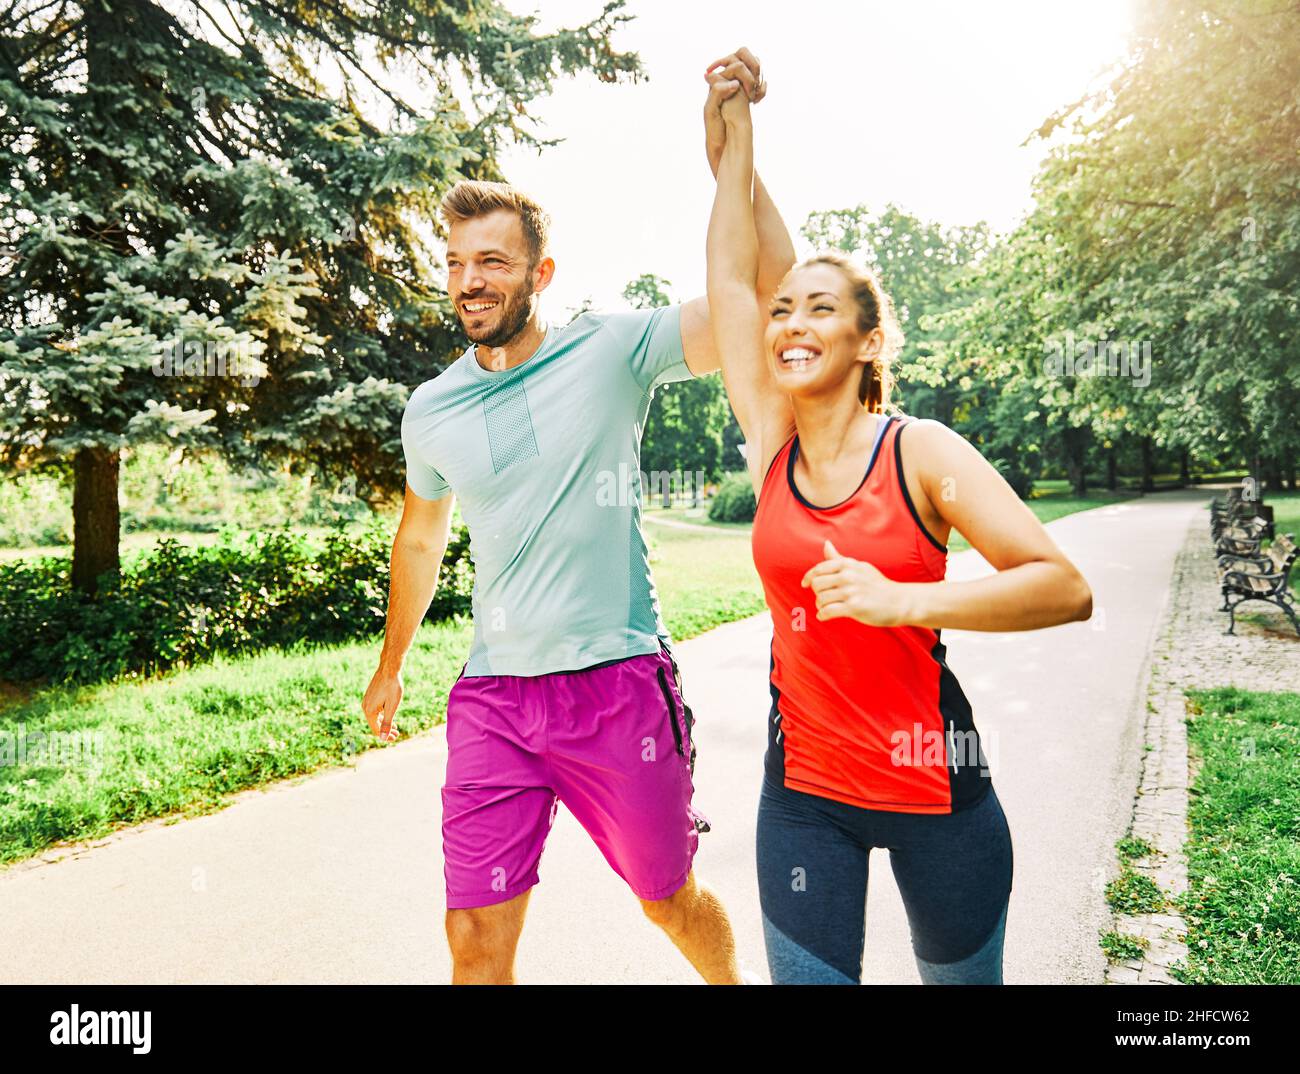 Porträt eines jungen Paares, das im Freien in einem Park läuft und trainiert Stockfoto